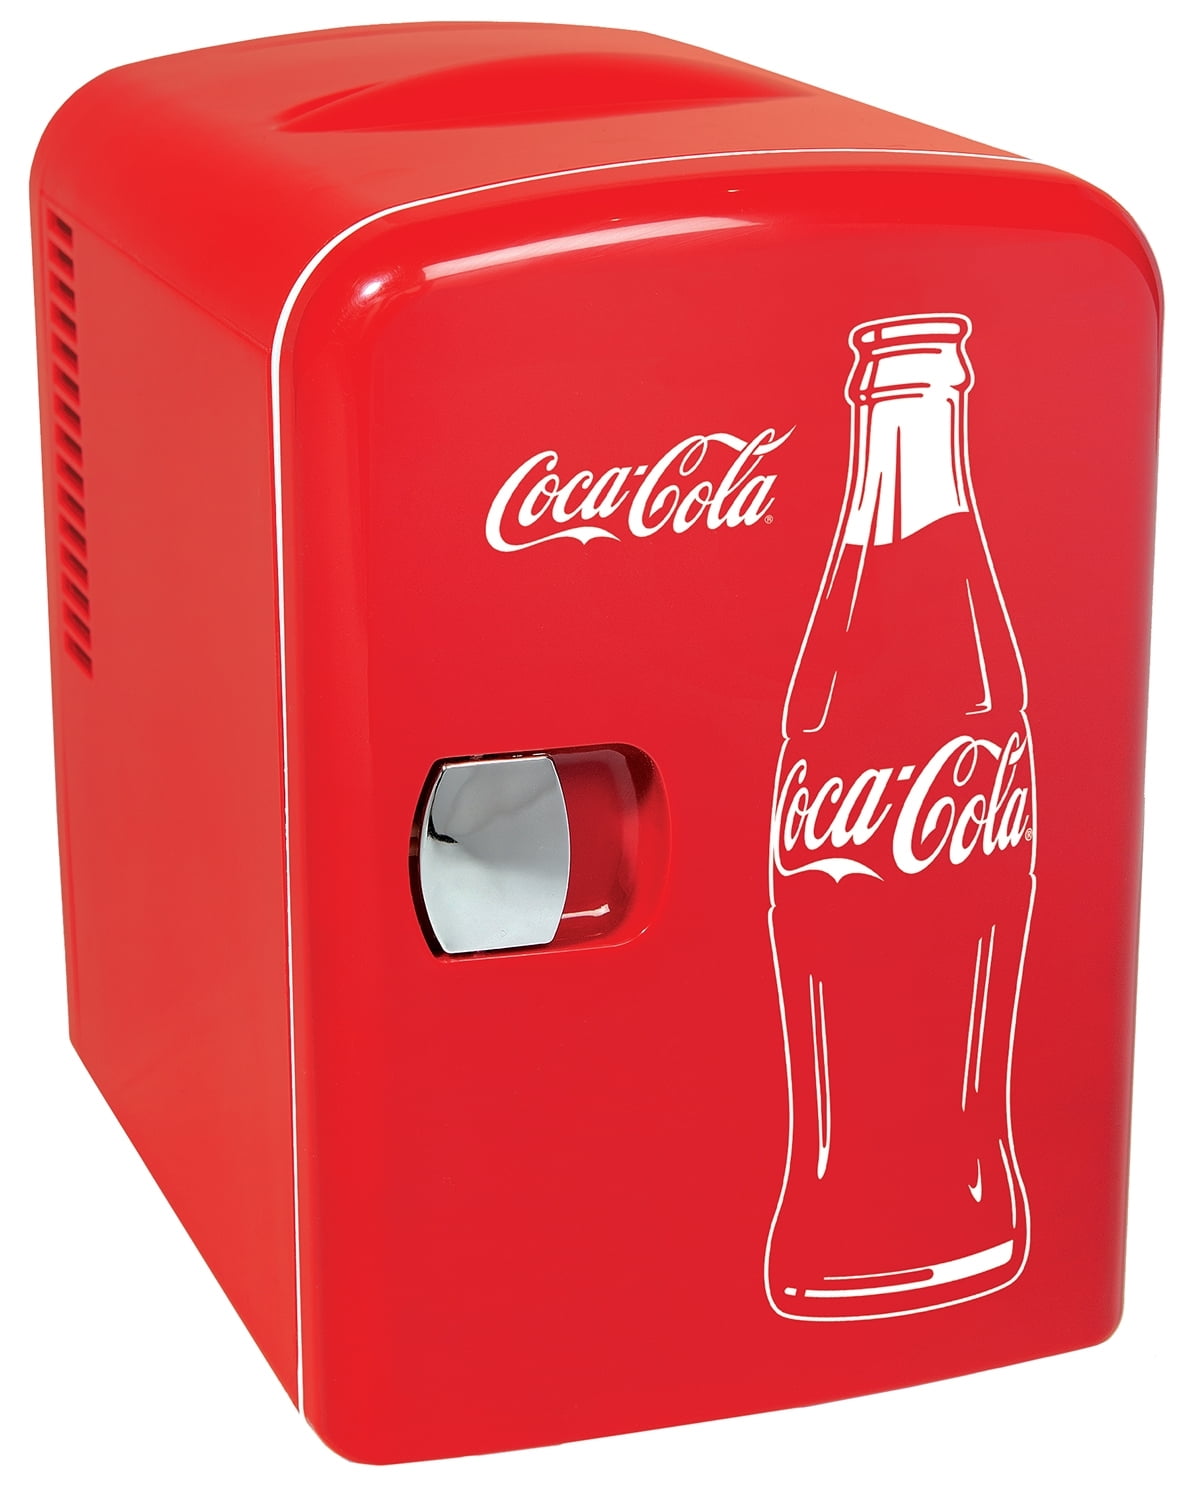 Classic Coca Cola 6 Can Personal Mini Cooler and Fridge - Walmart.com ...